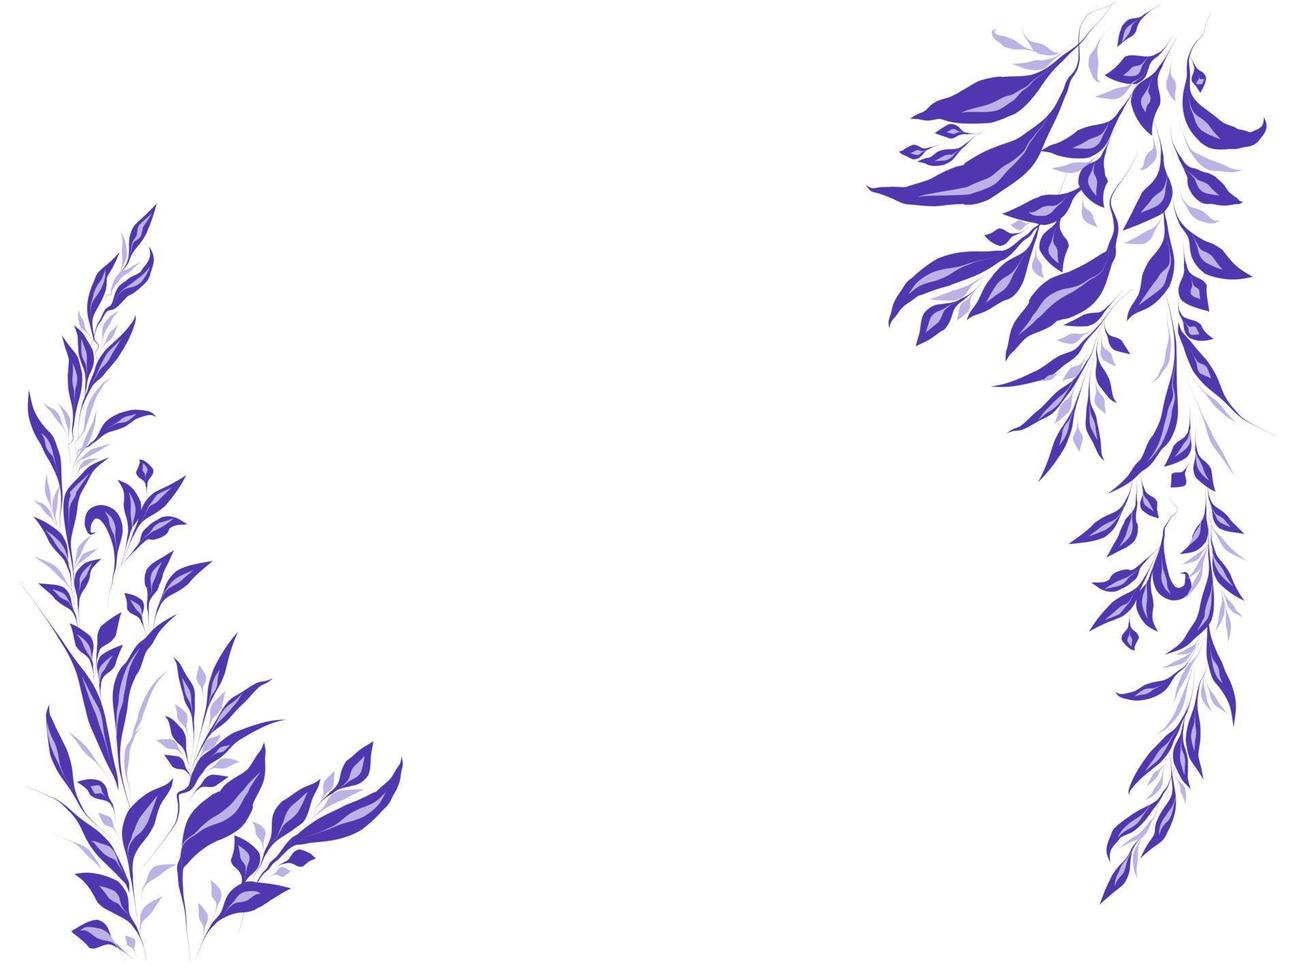 motivo floreale per sfondo, illustrazione vettoriale di fiori in fiore